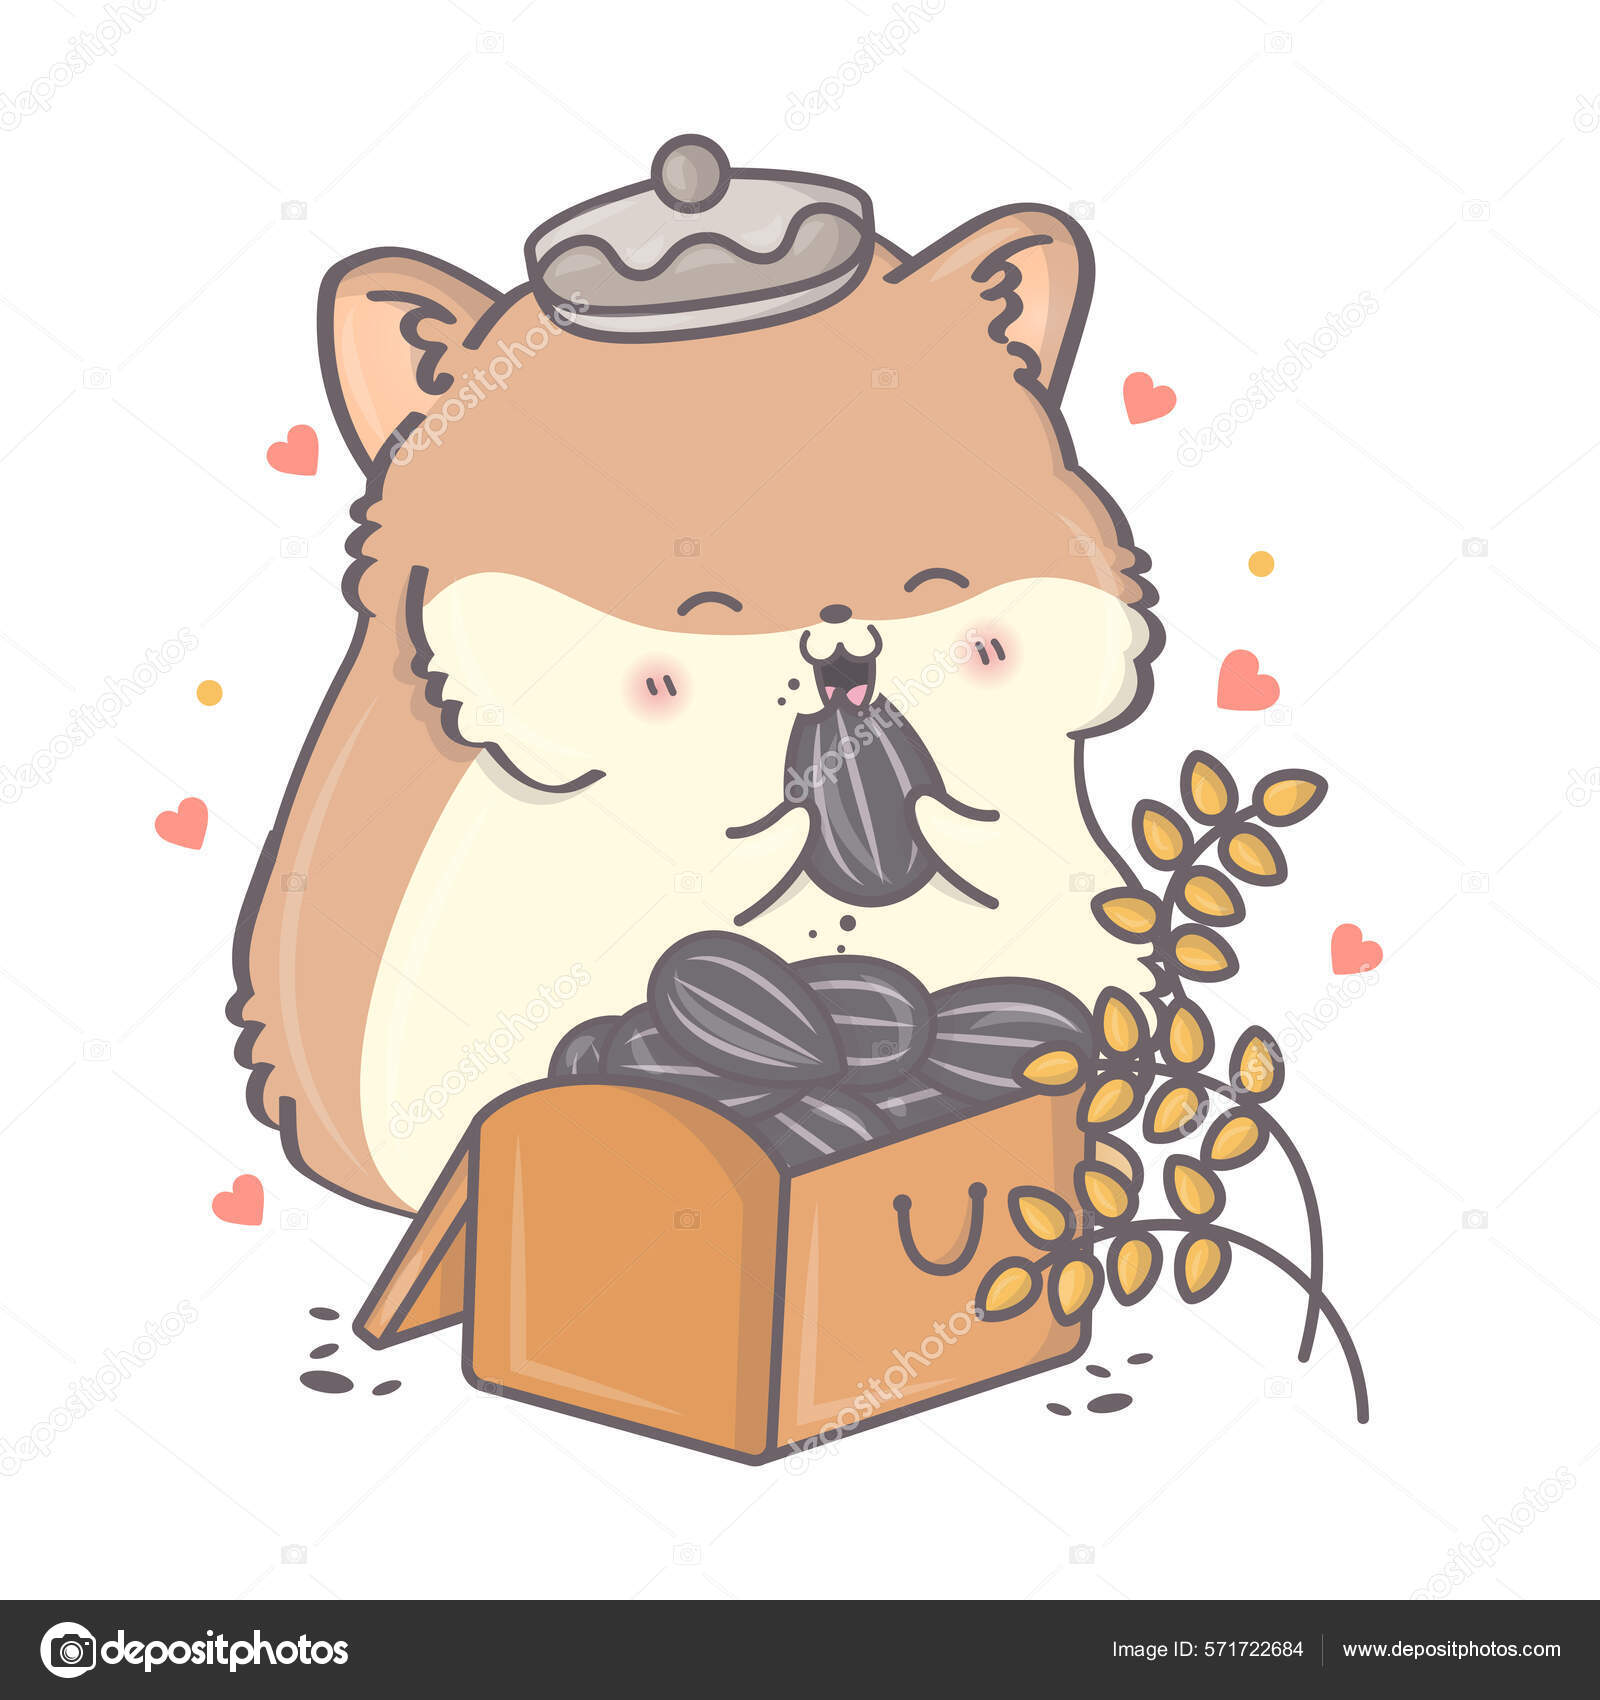 Um hamster com longos bigodes está sobre uma pilha de doces.